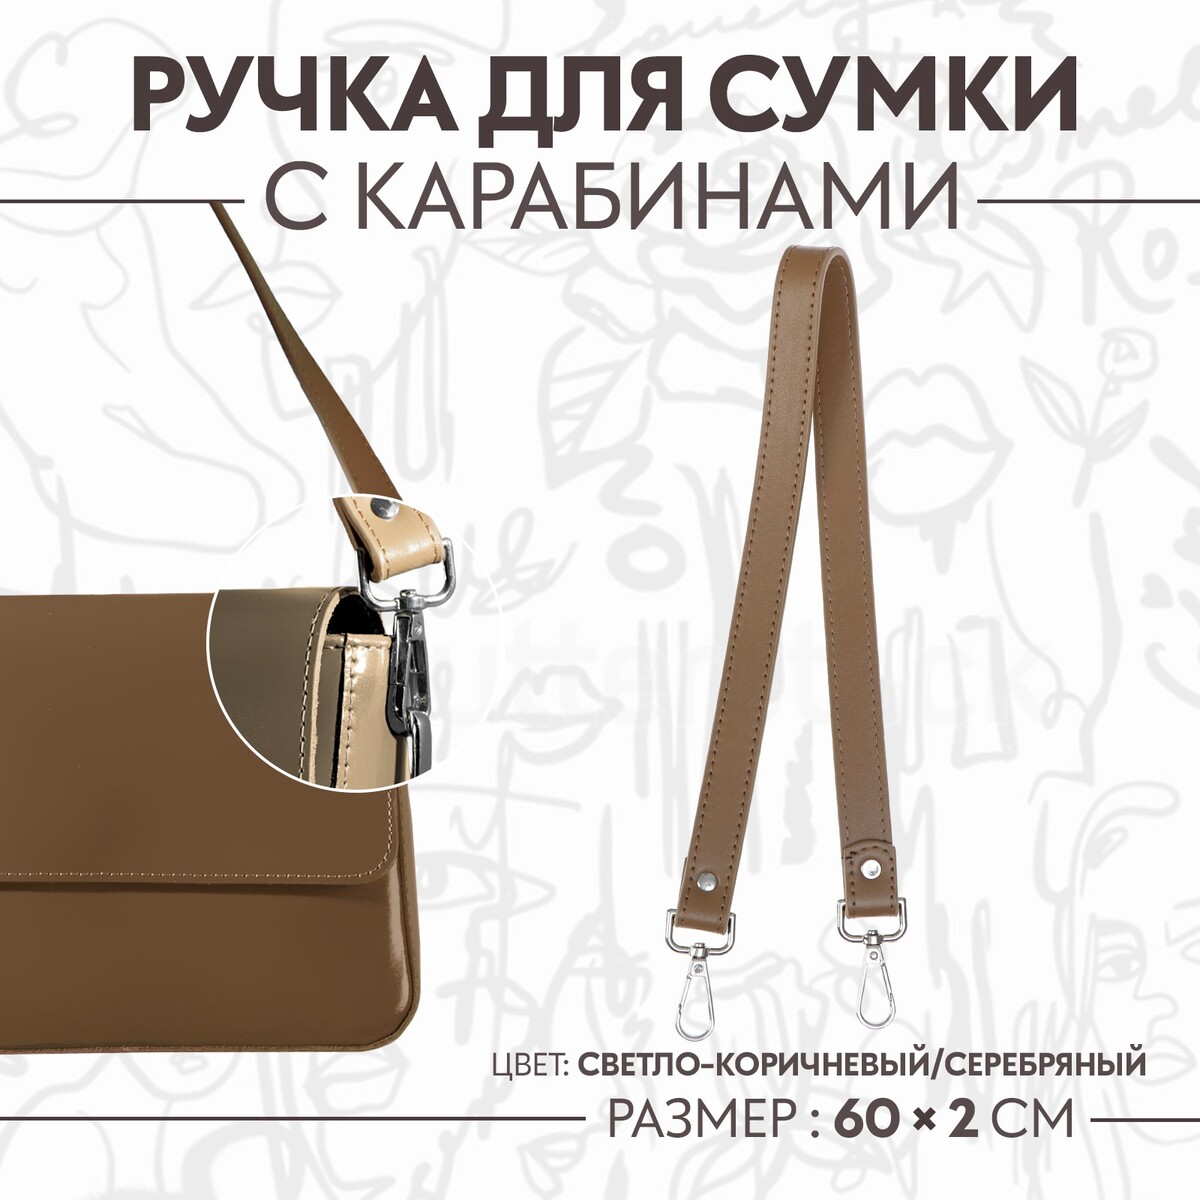 Ручка для сумки, с карабинами, 60 × 2 см, цвет светло-коричневый ручка для сумки лакированная с карабинами 60 ± 1 см